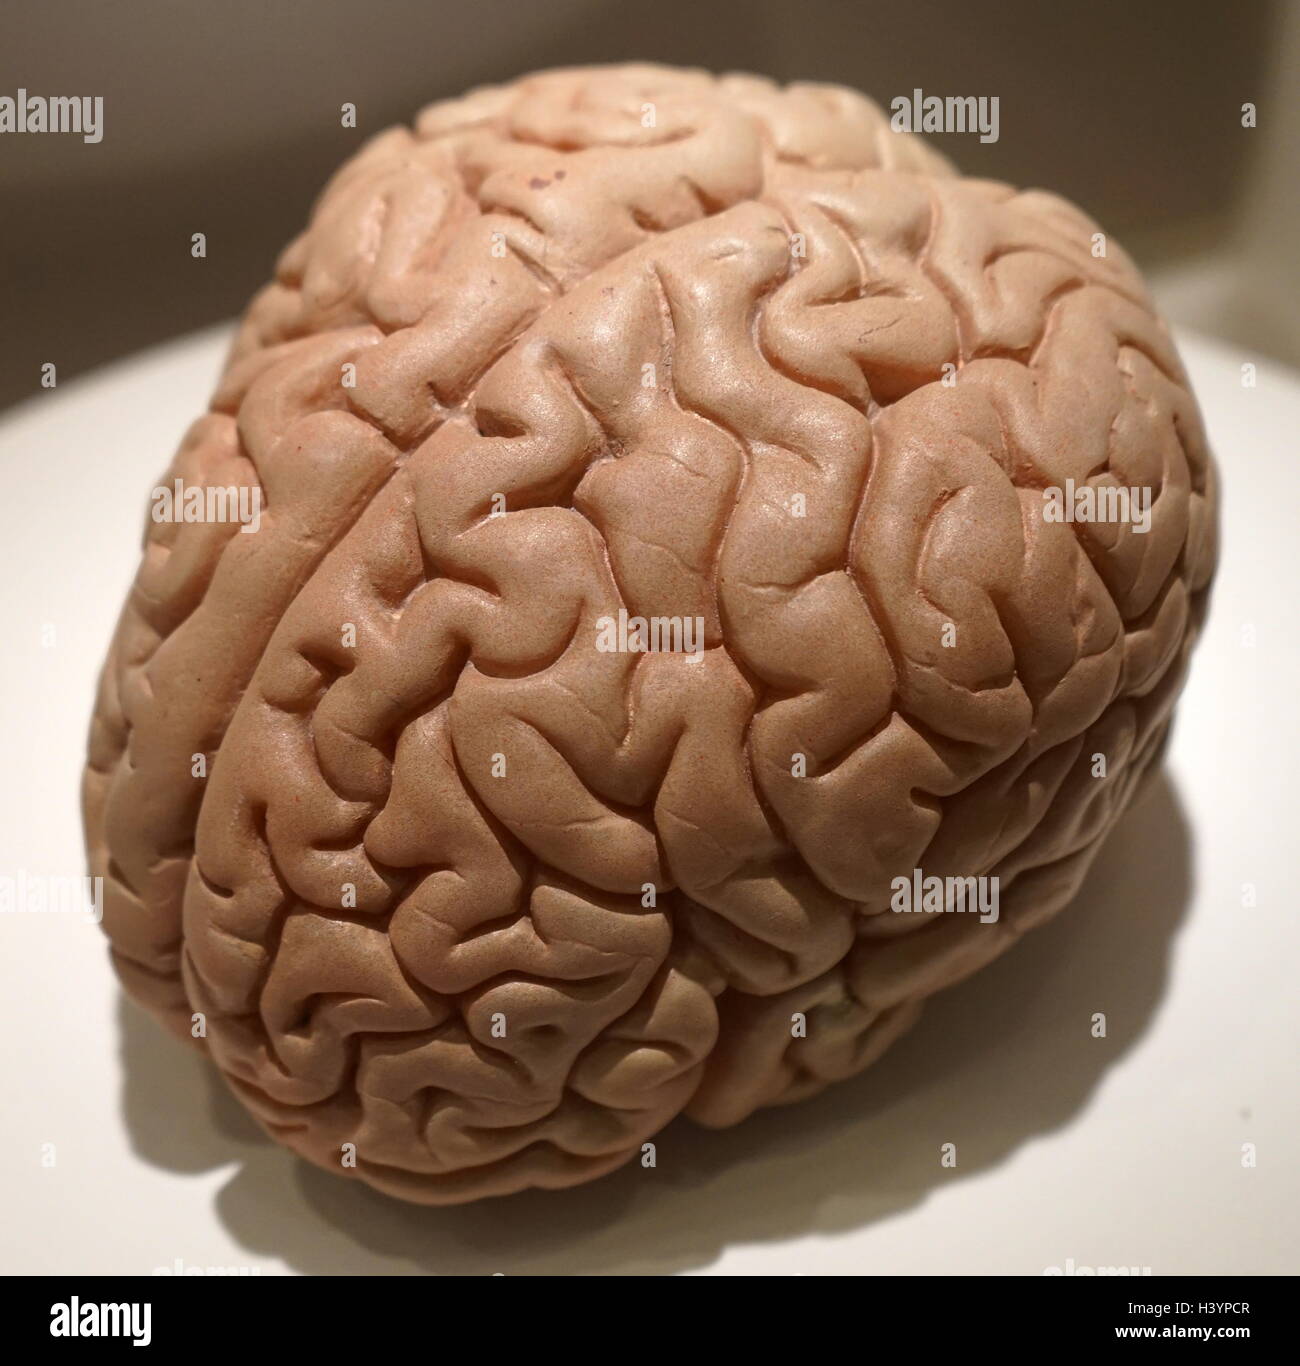 Lebensgroße Modell eines menschlichen Gehirns. Das Gehirn ist ein Organ, das als Zentrum des Nervensystems in allen Wirbeltieren dient und die meisten wirbellosen Tieren. Vom 21. Jahrhundert Stockfoto